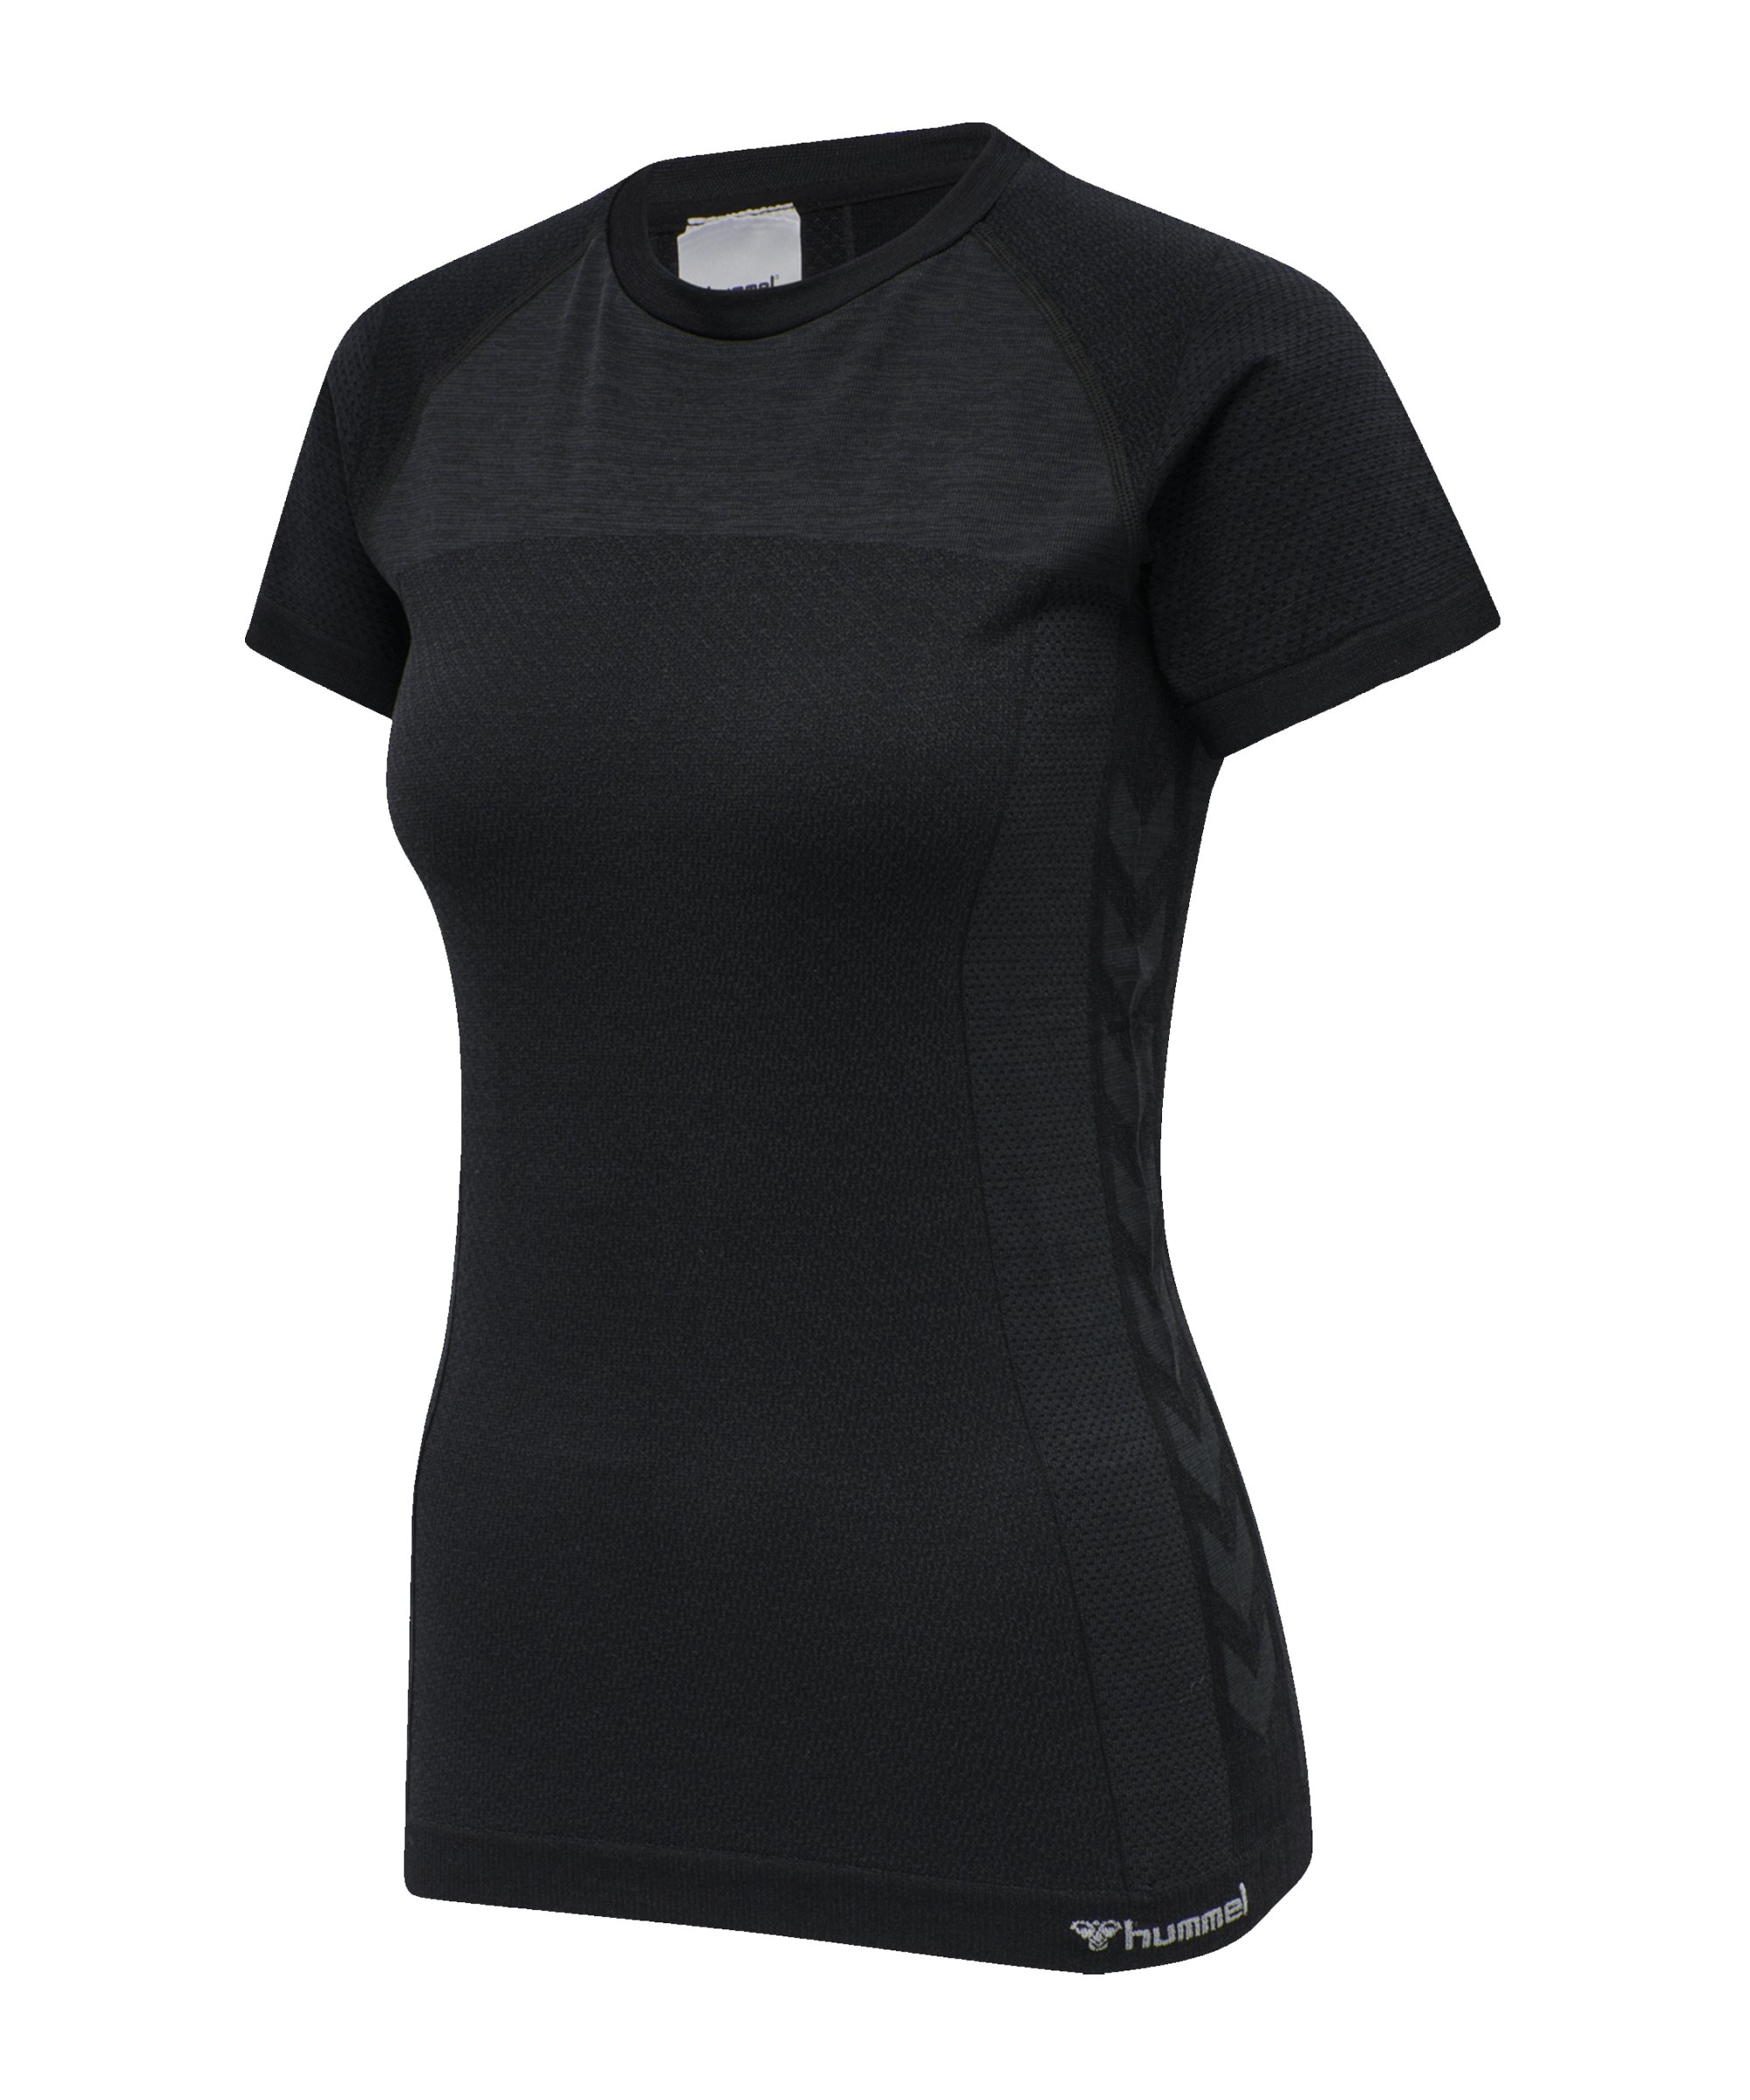 Hummel hmlCLEA Seamless T-Shirt Schwarz f2508 - schwarz